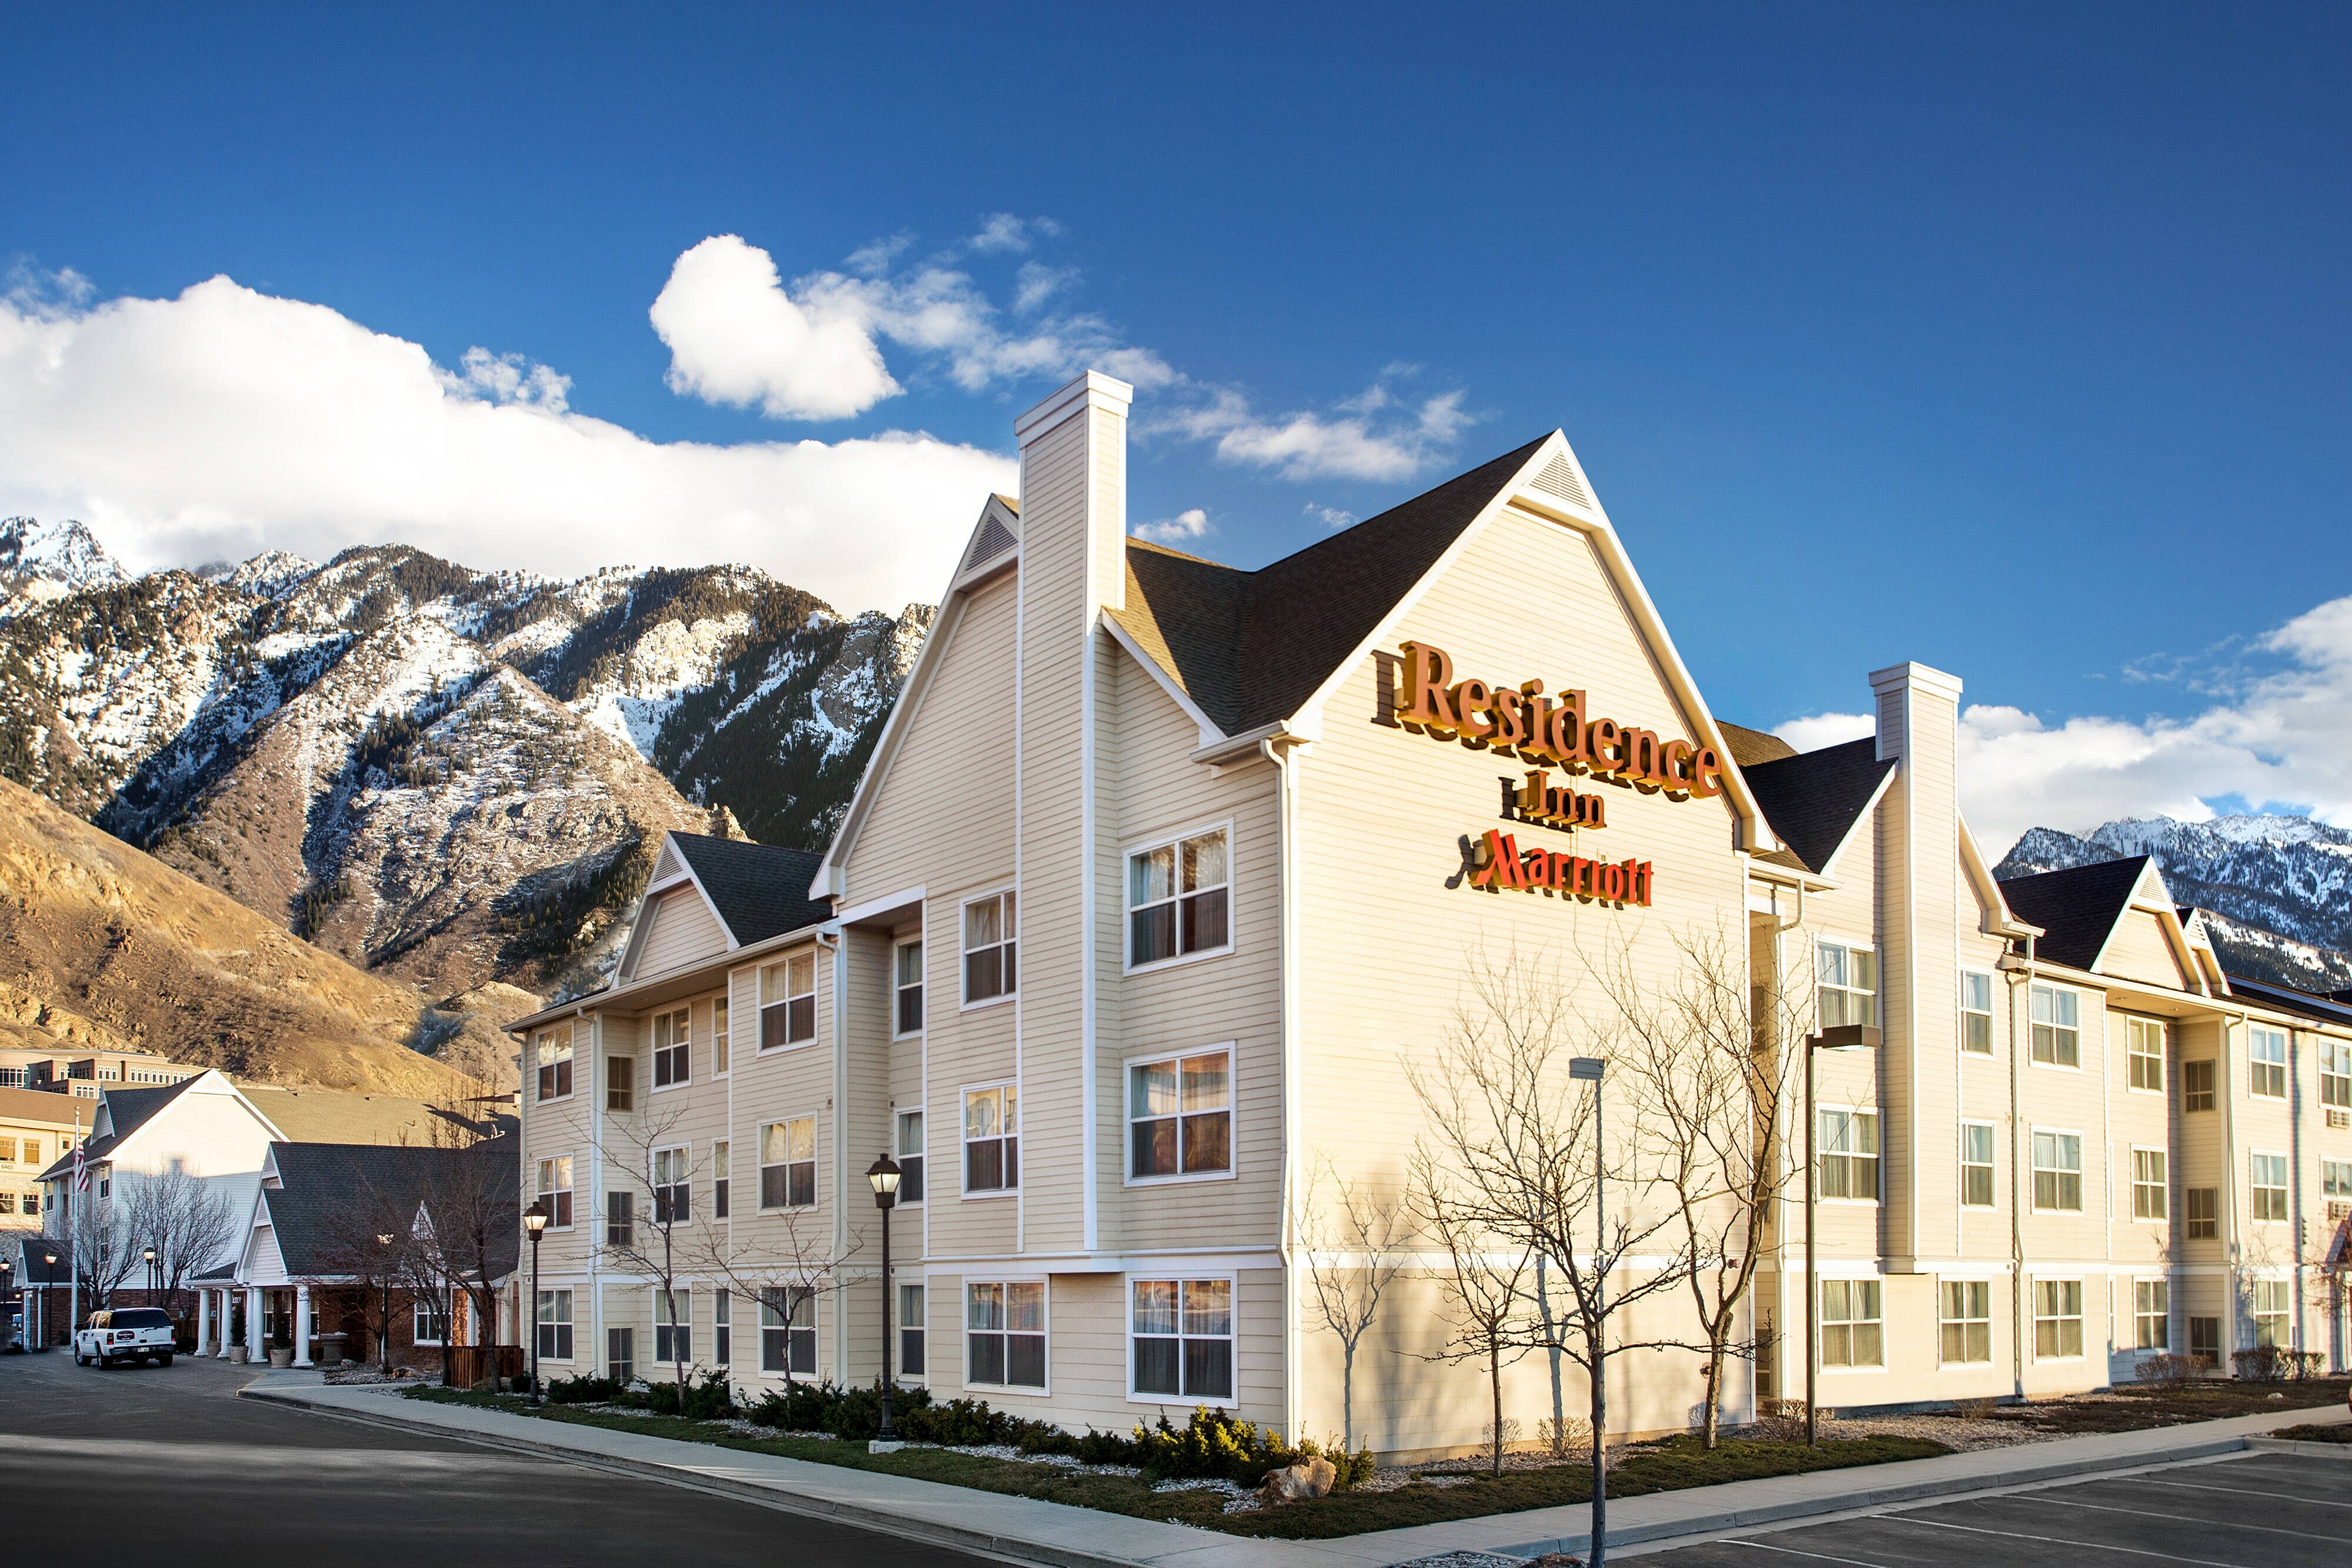 Photo of Residence Inn Salt Lake City Cottonwood, Salt Lake City, UT